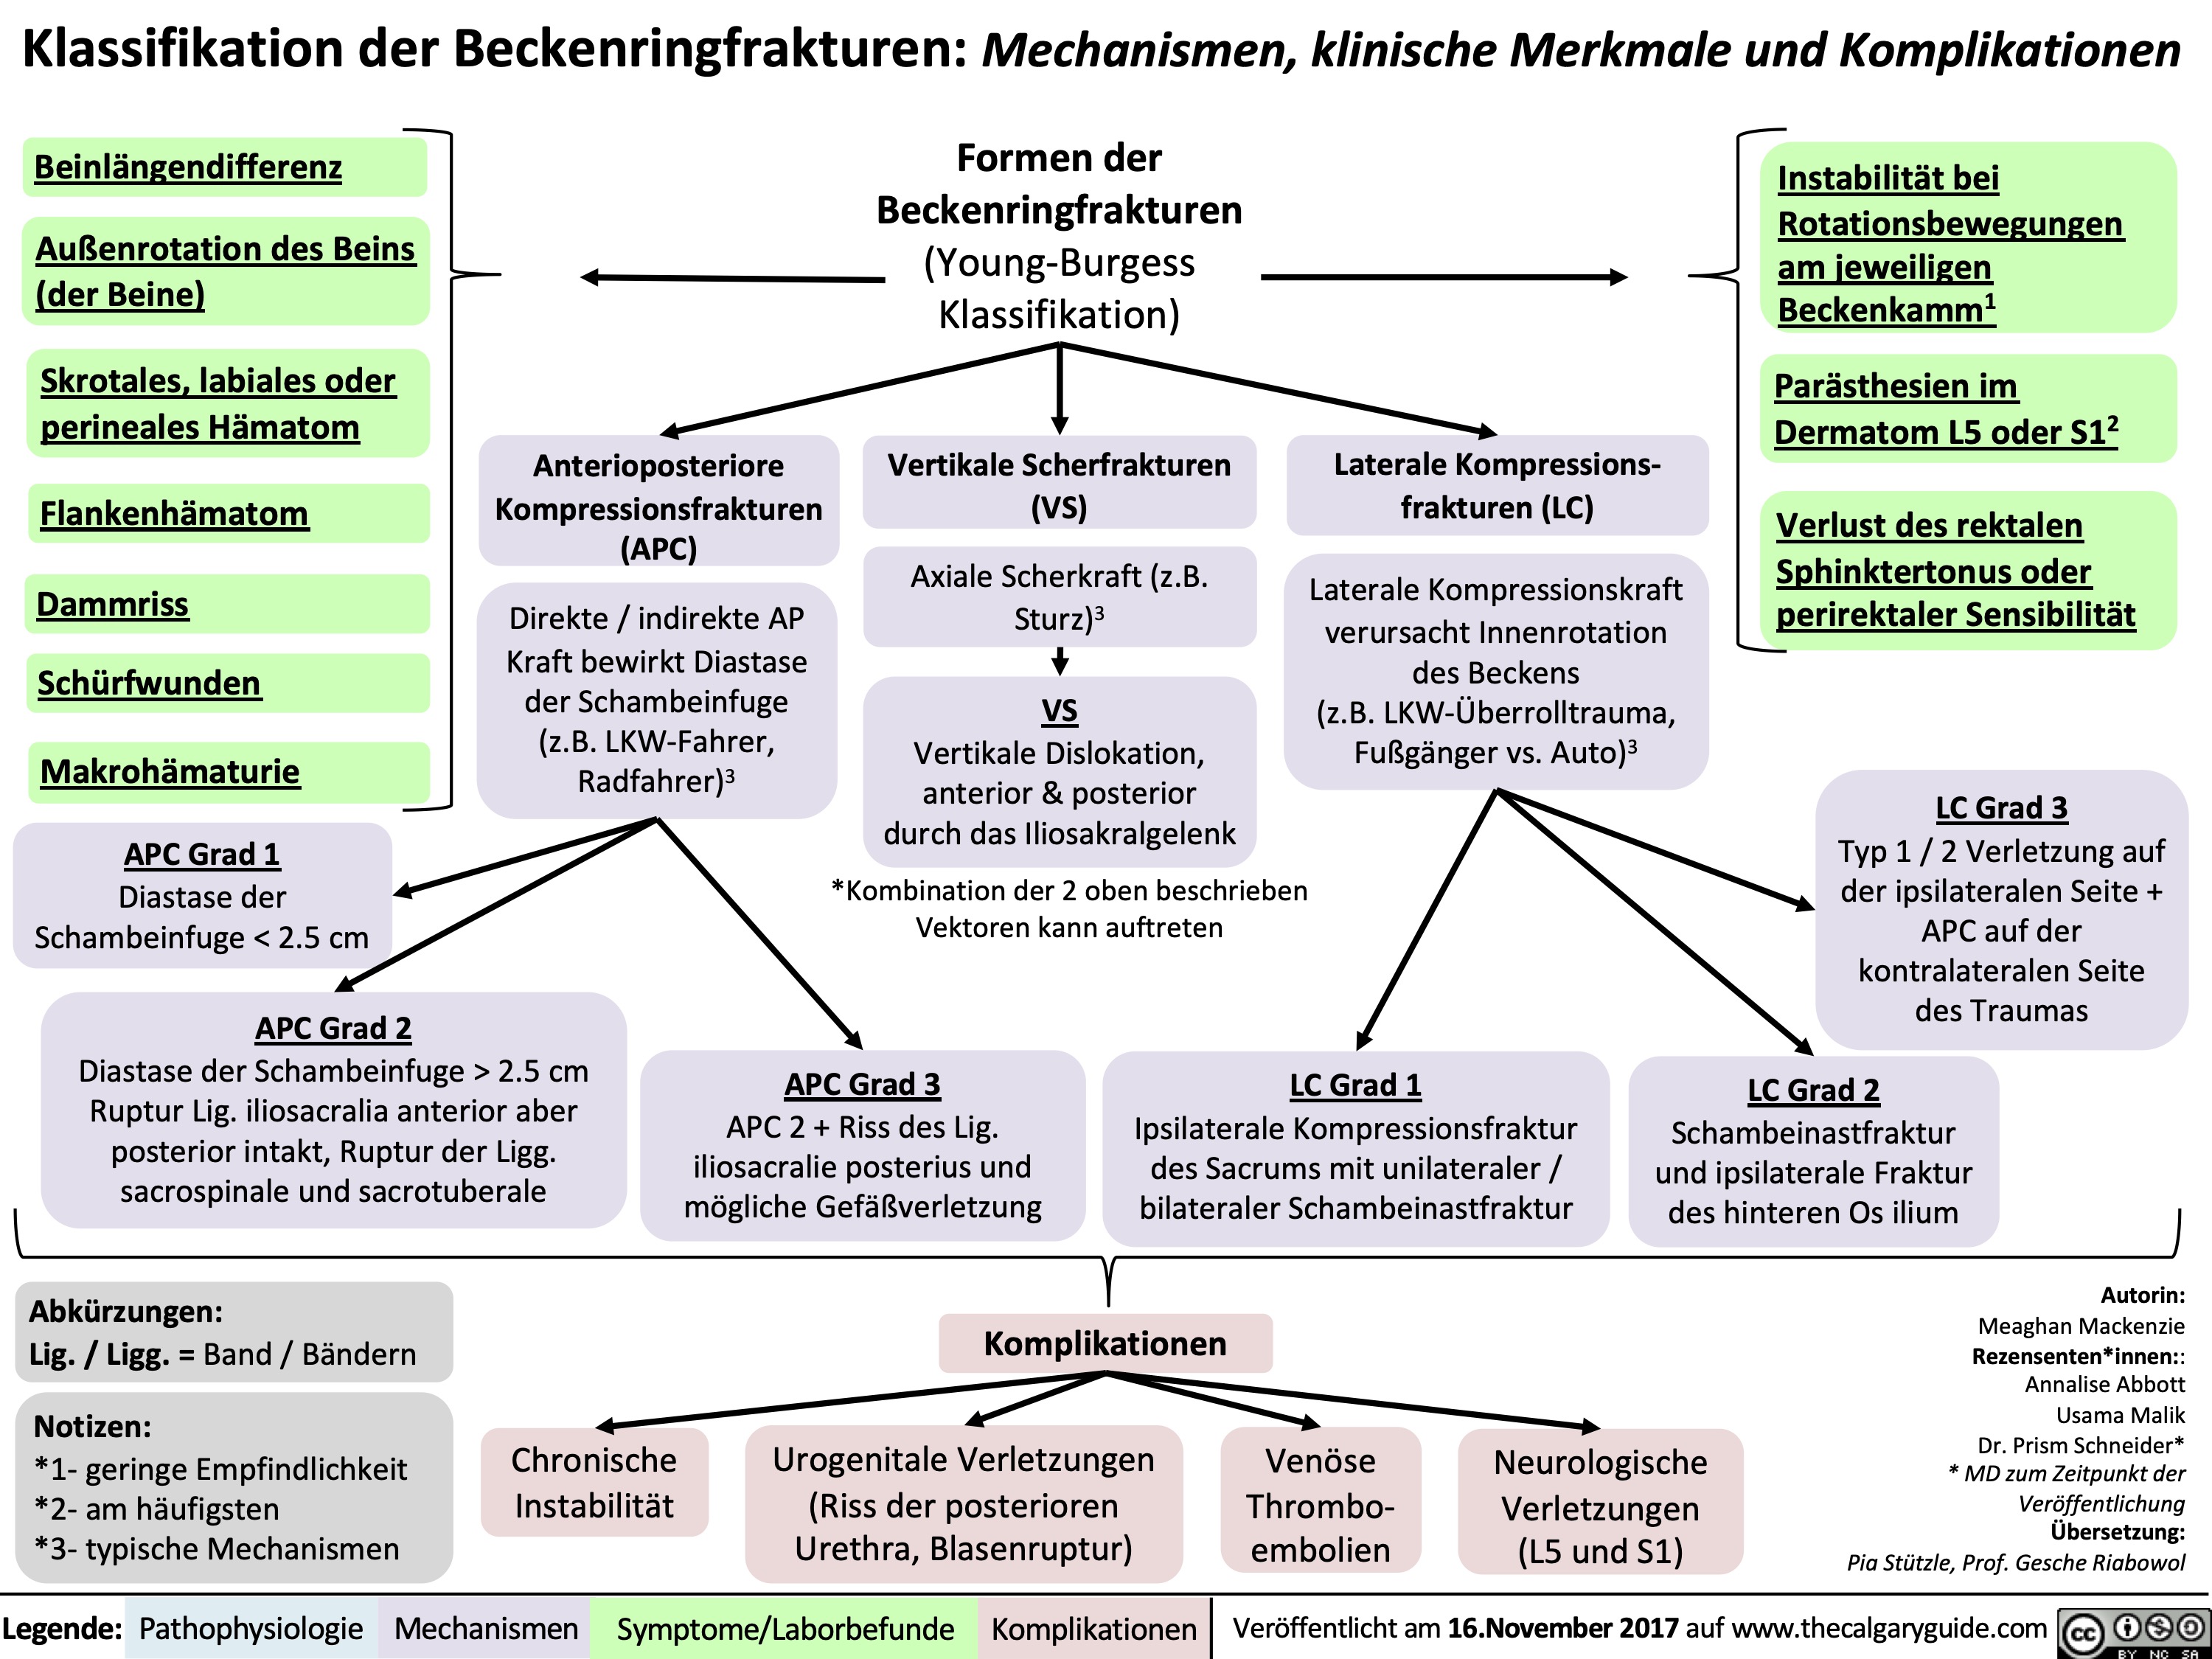 Klassifikation der Beckenringfrakturen: Mechanismen, klinische Merkmale und Komplikationen